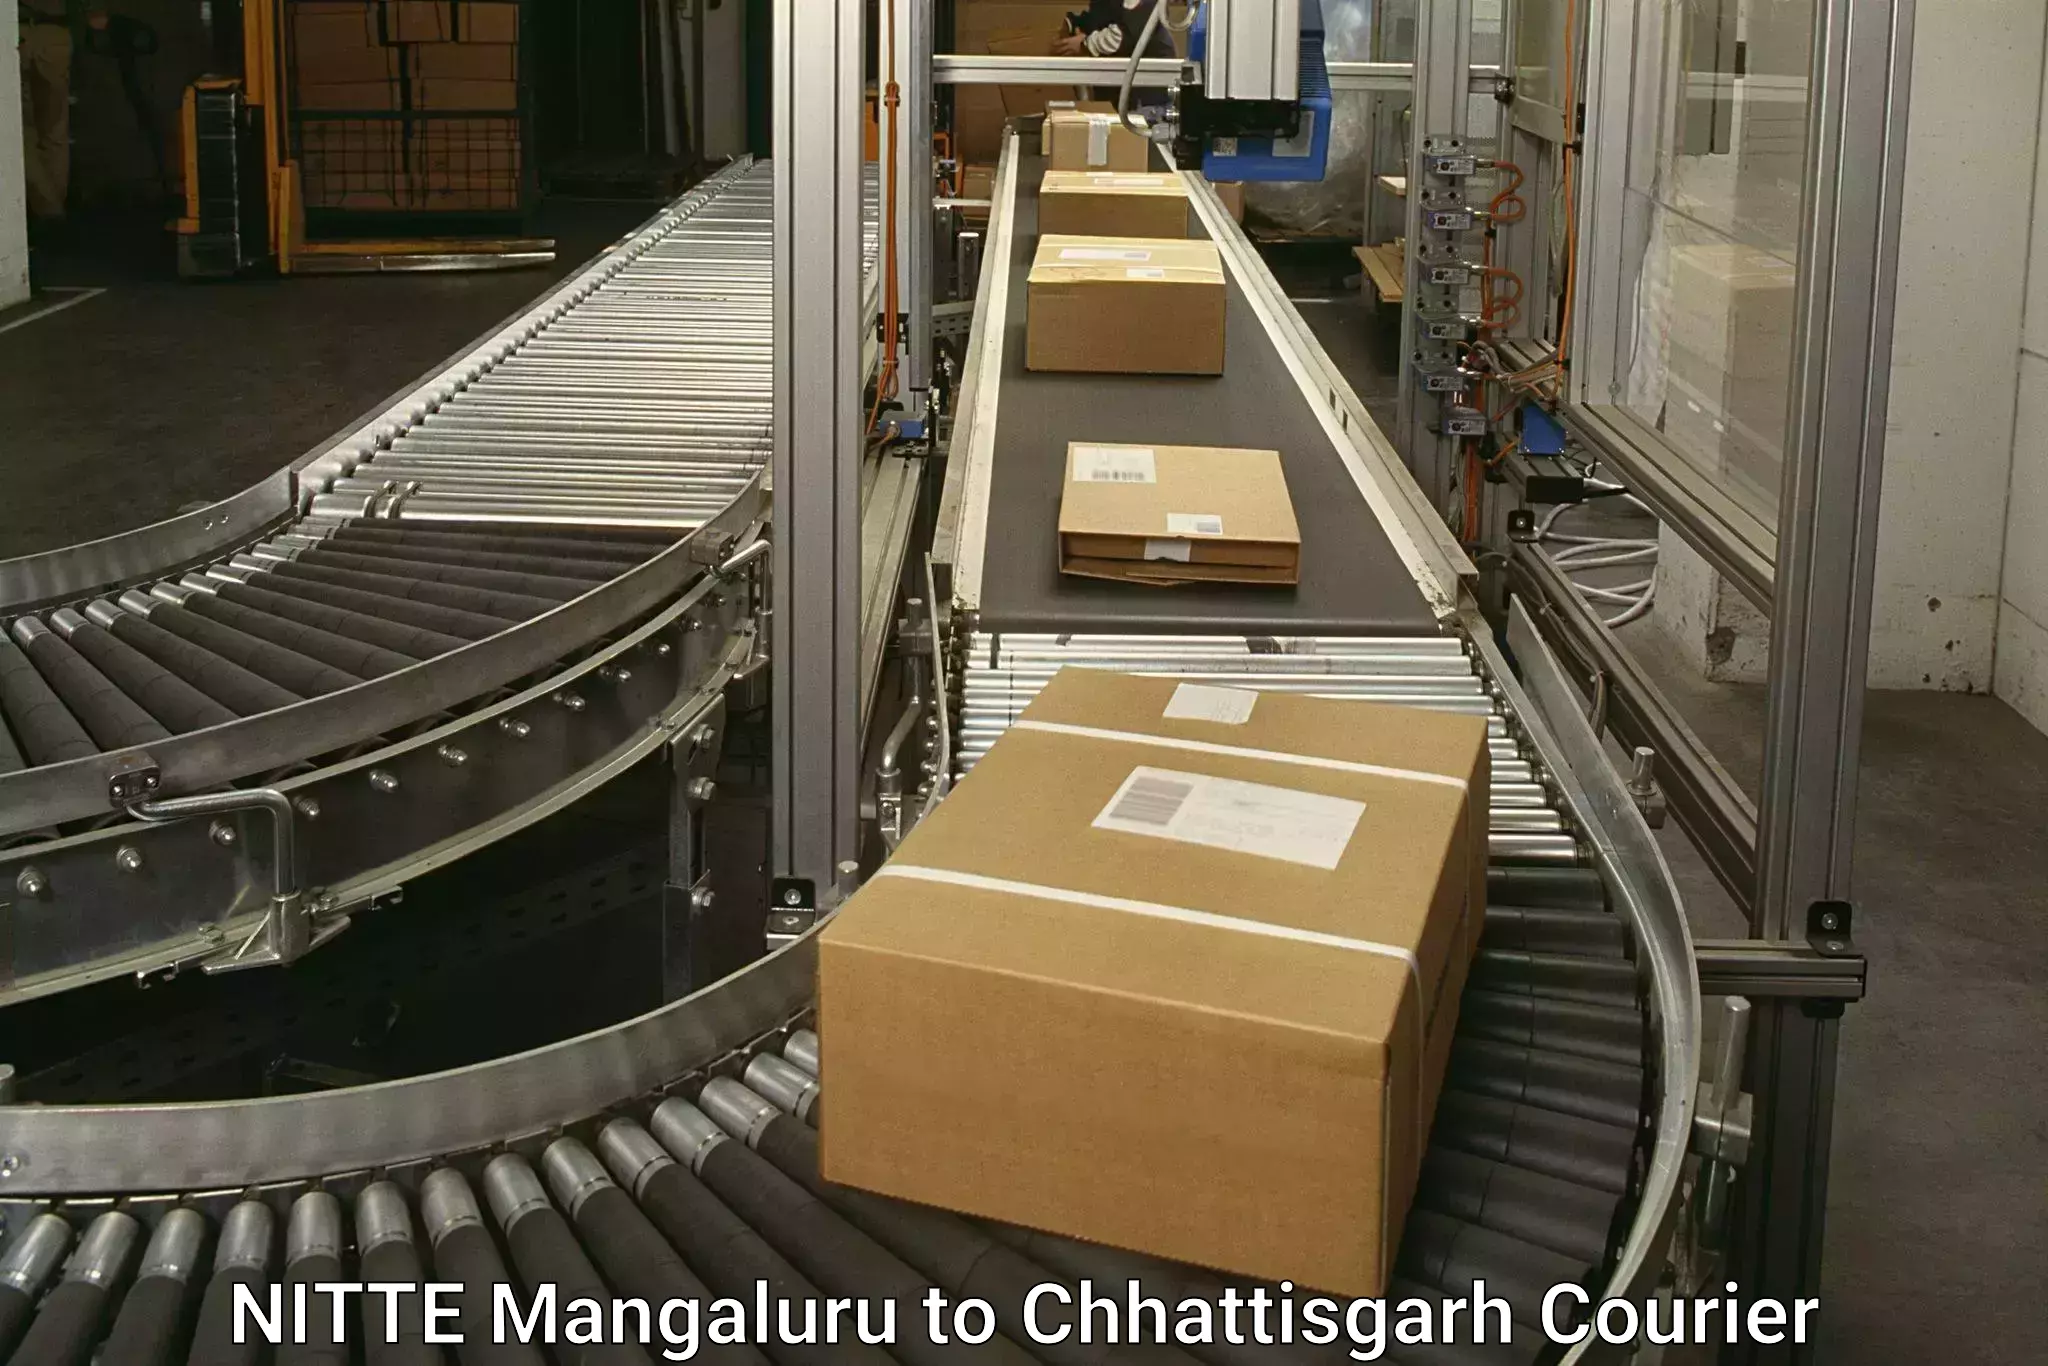 Express postal services NITTE Mangaluru to bagbahra